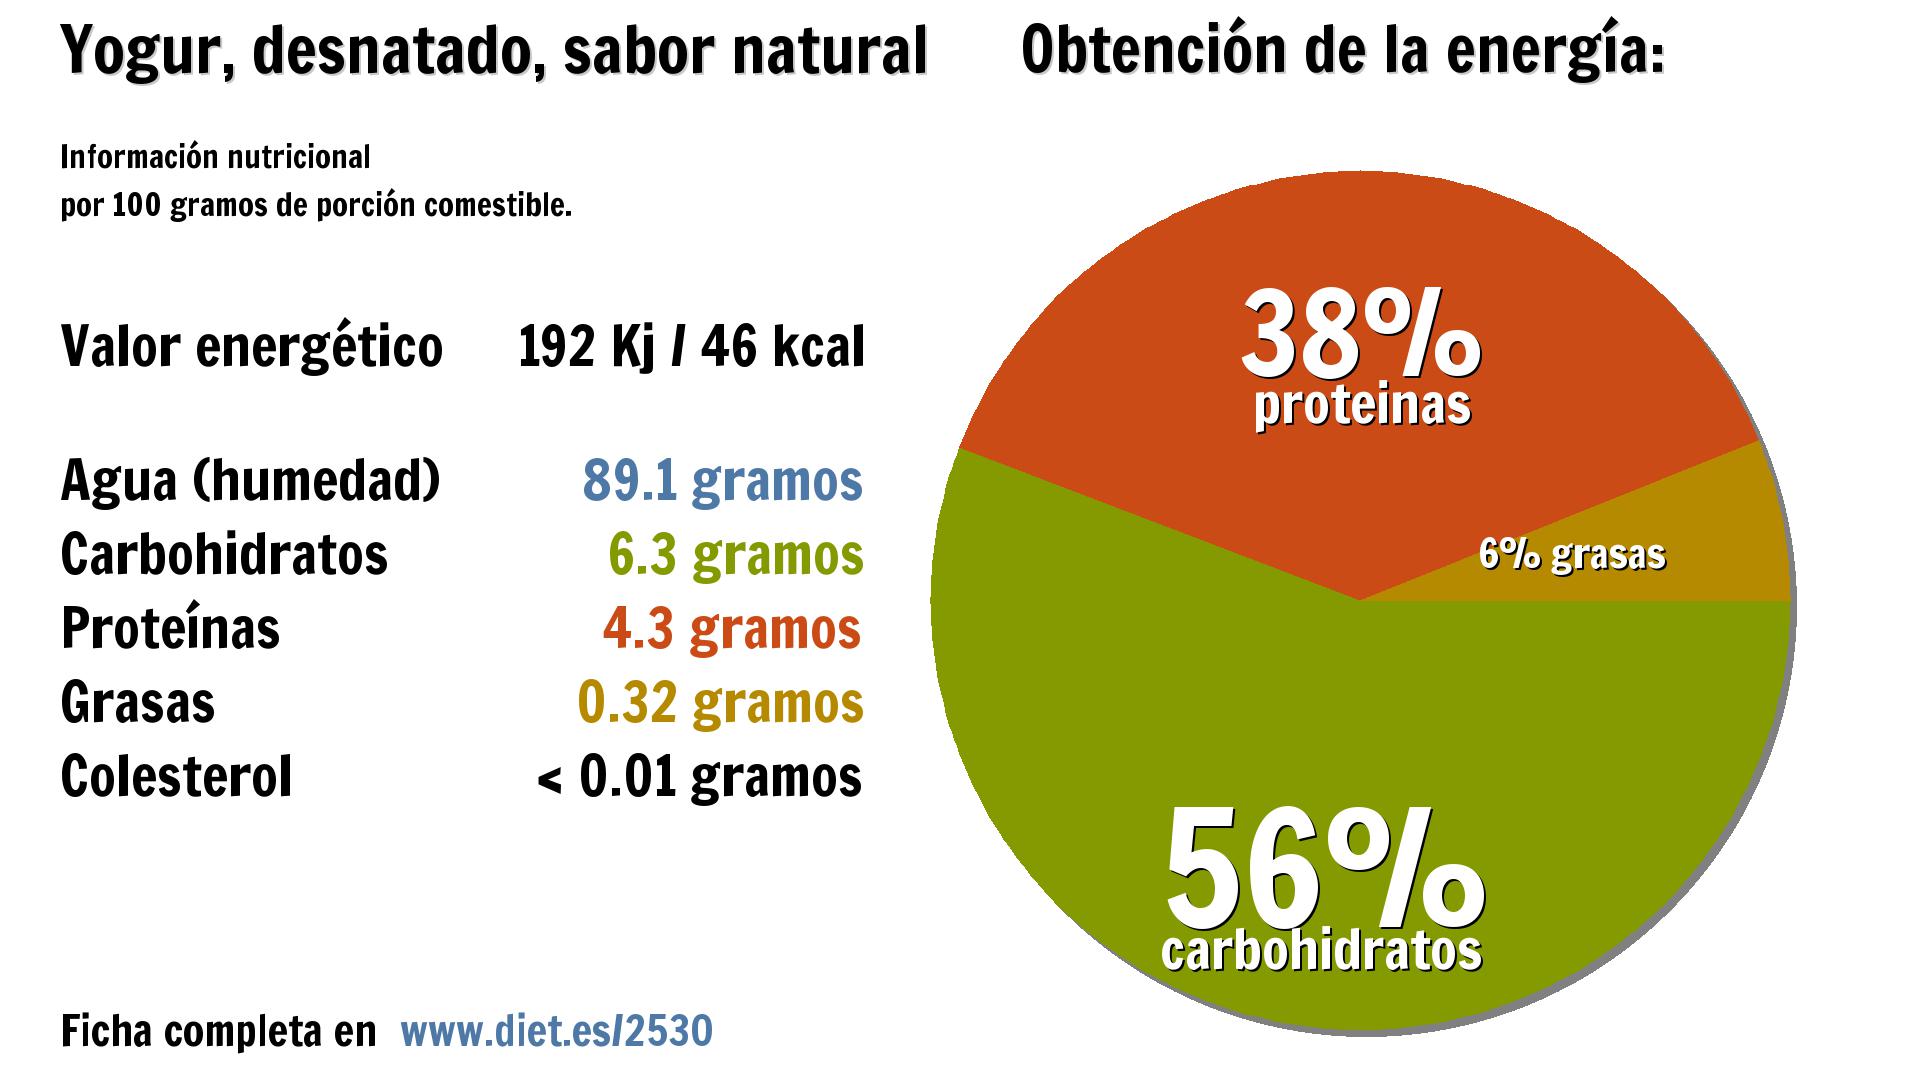 Yogur, desnatado, sabor natural: energía 192 Kj, agua 89 g., carbohidratos 6 g. y proteínas 4 g.